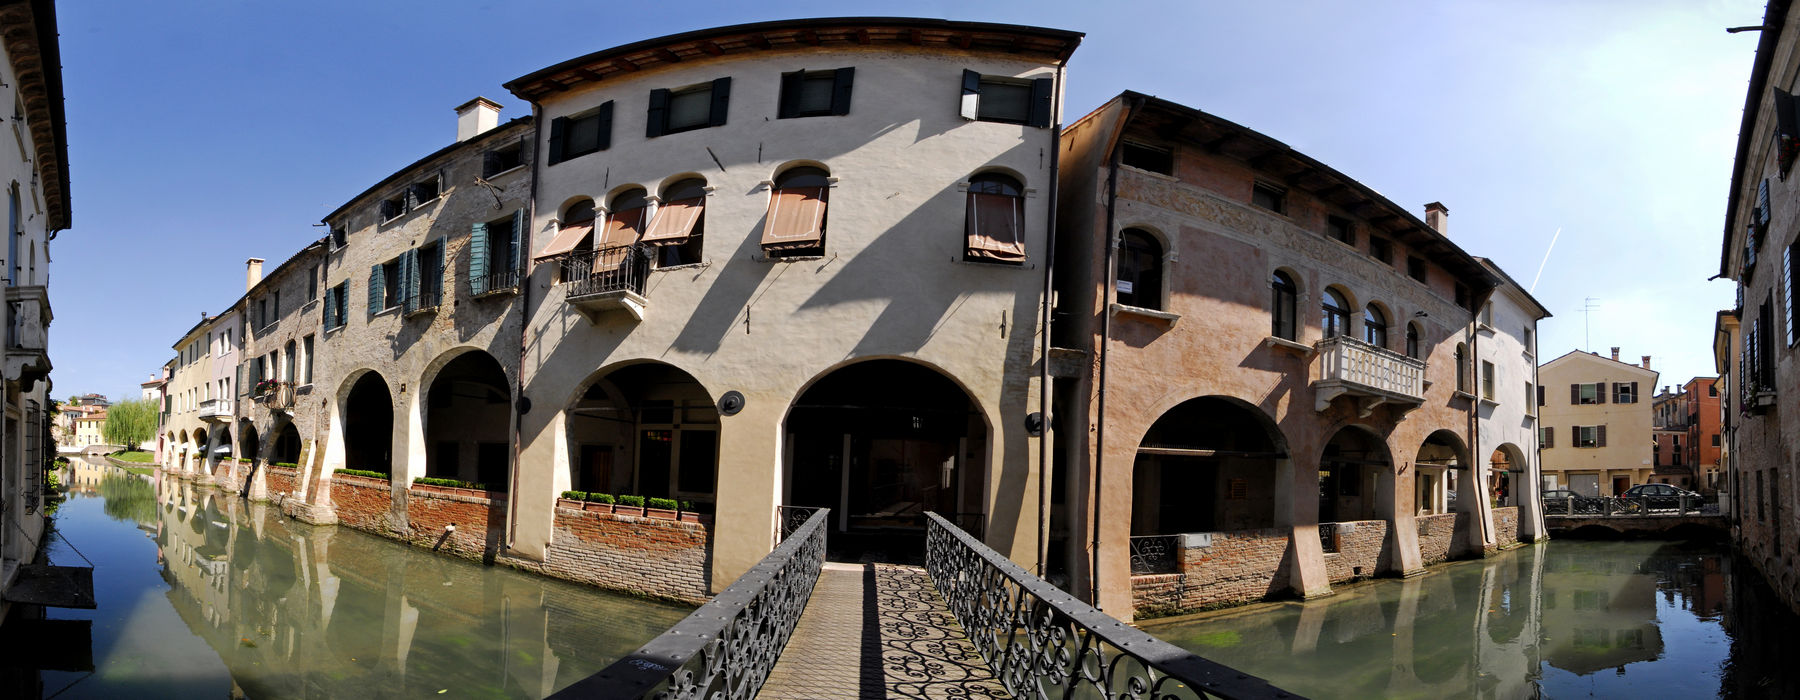 Treviso - canale Buranelli, fiume Sile e Cagnan